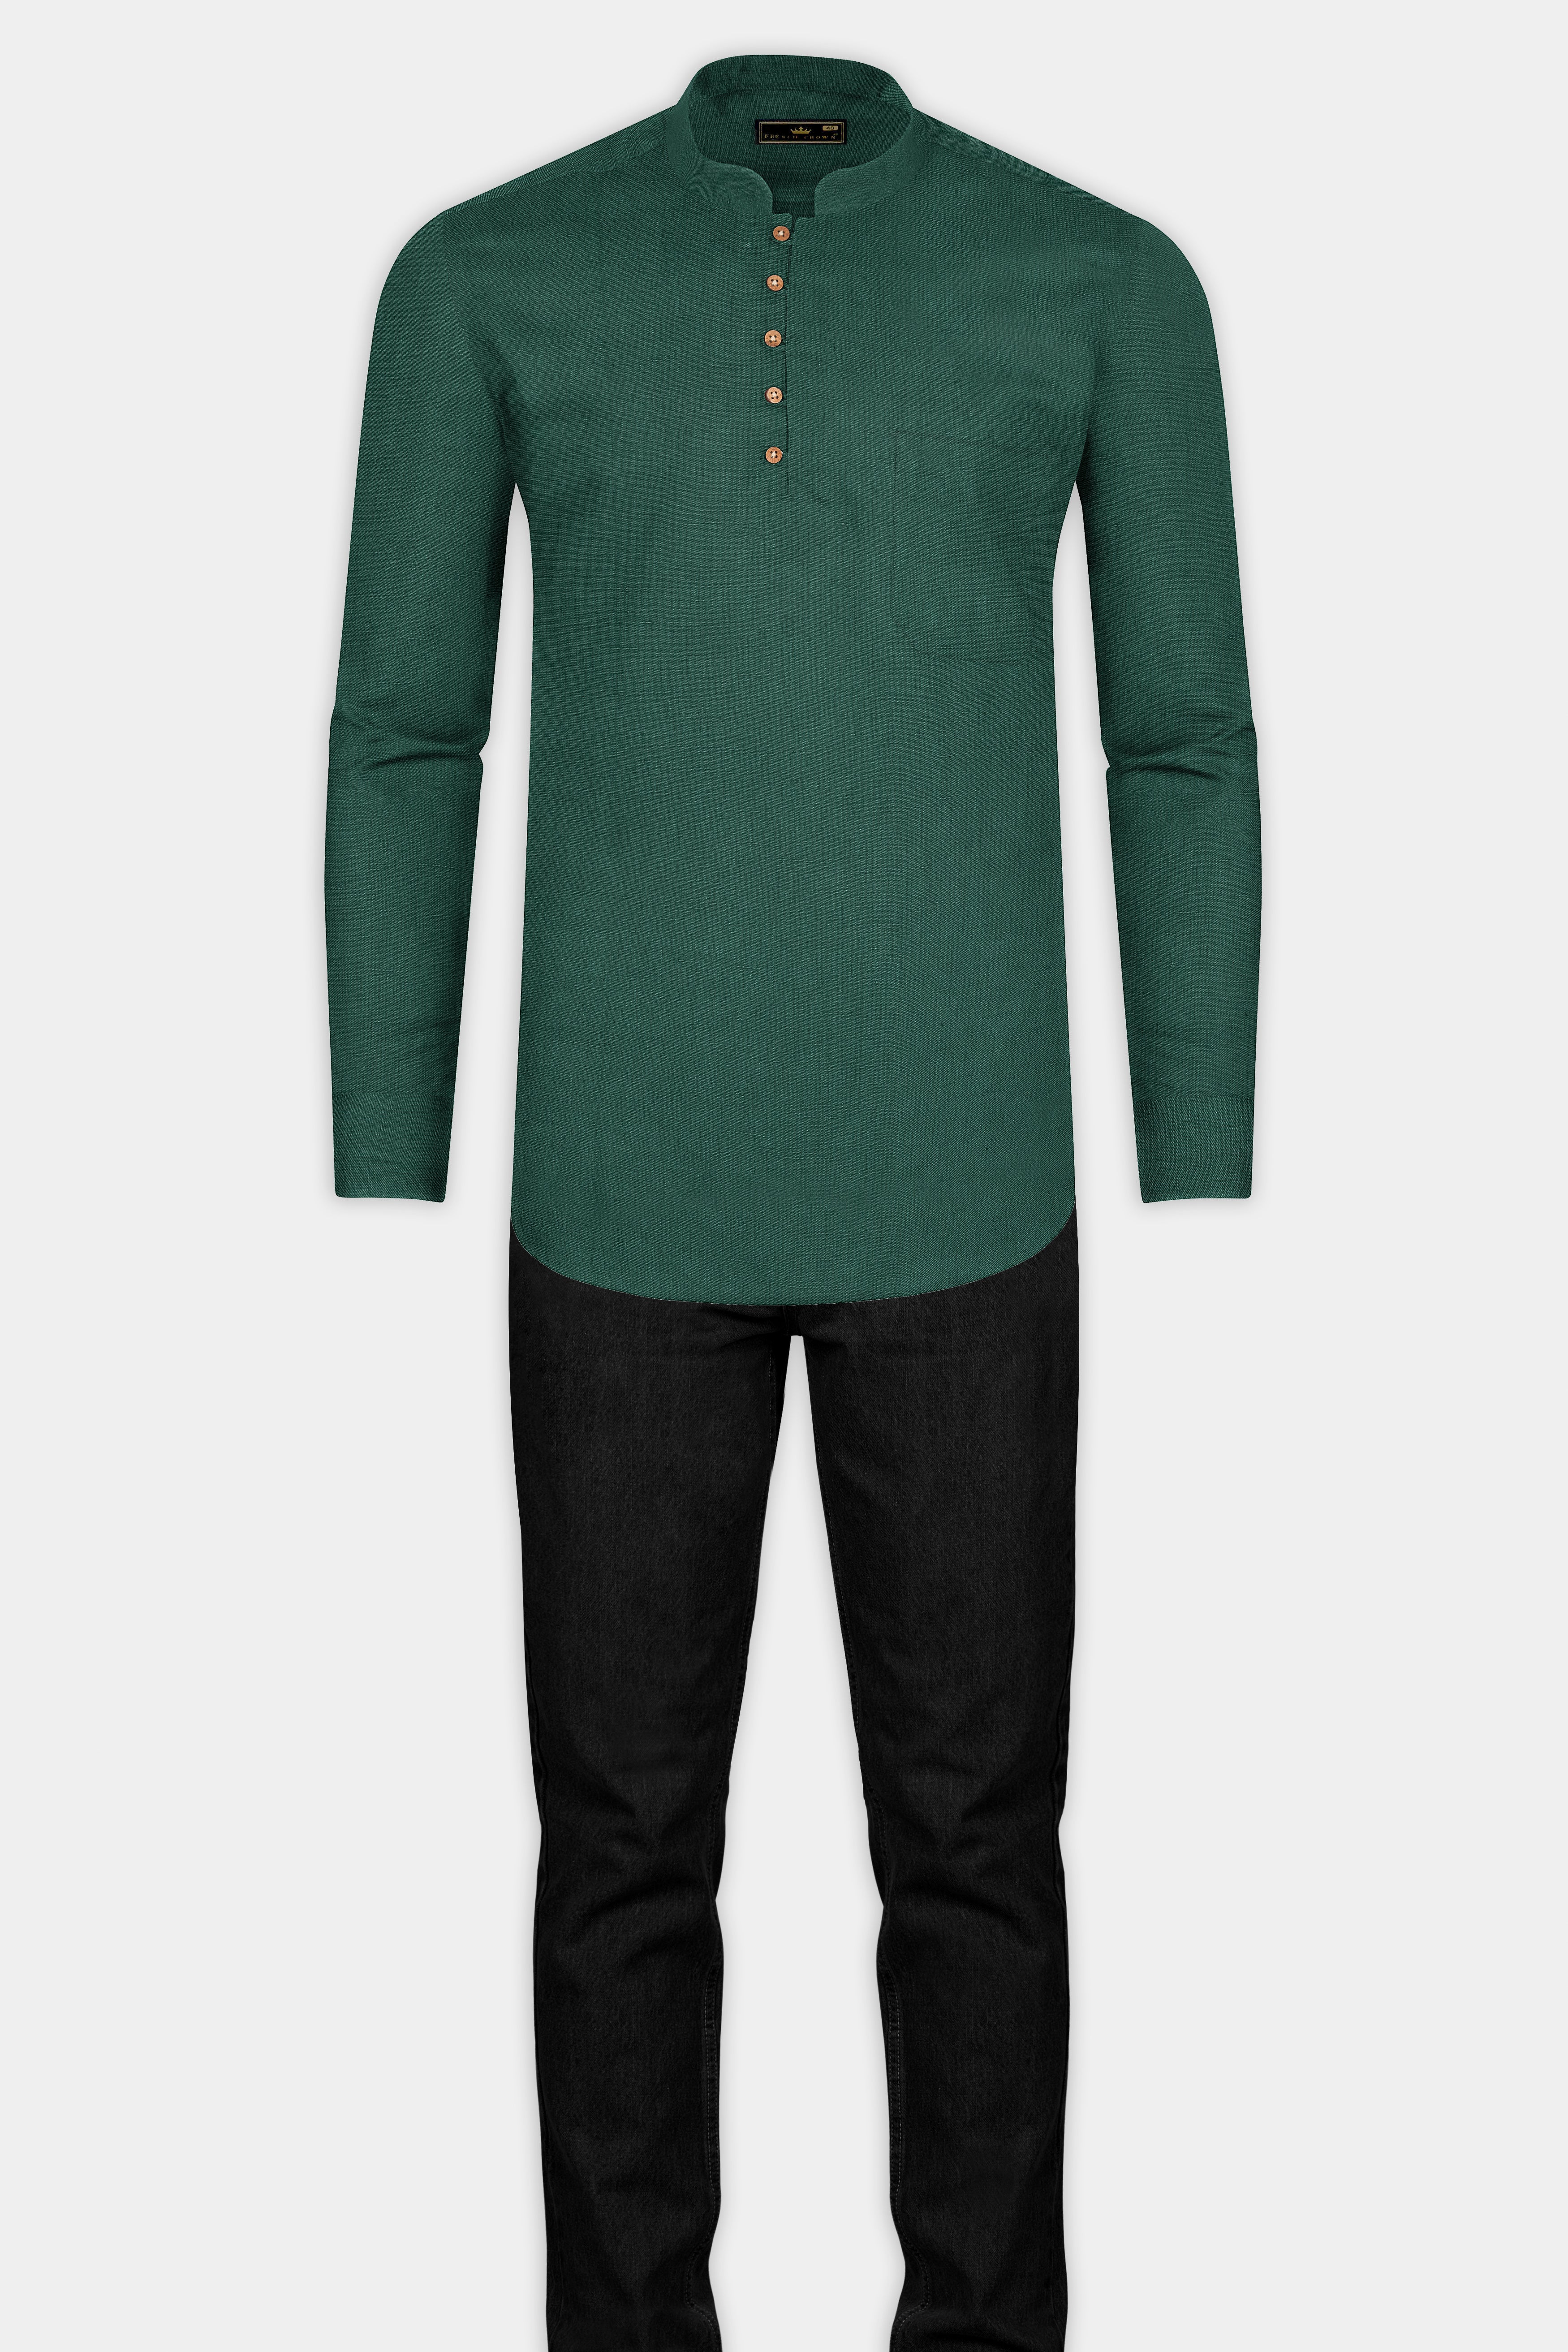 Everglade Green Luxurious Linen Kurta Shirt